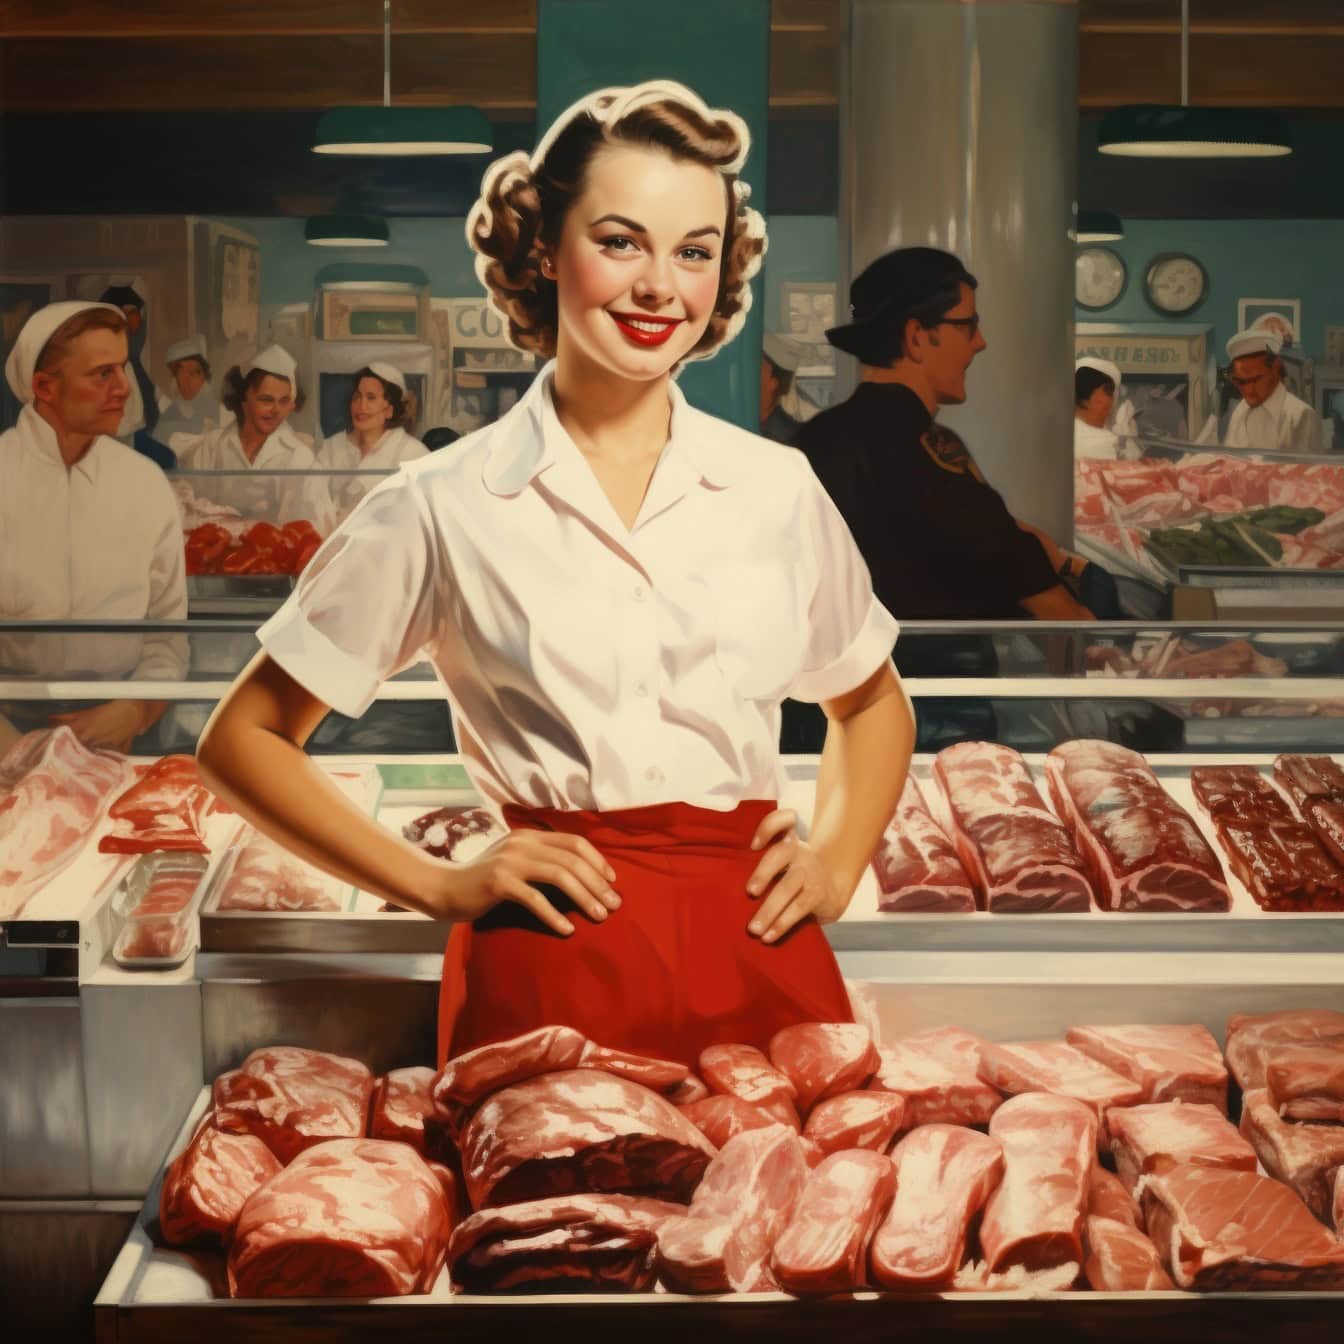 Een slagersvrouw die zich voor vlees in een slagerij of supermarkt bevinden, een illustratie in de stijl van de jaren 1960